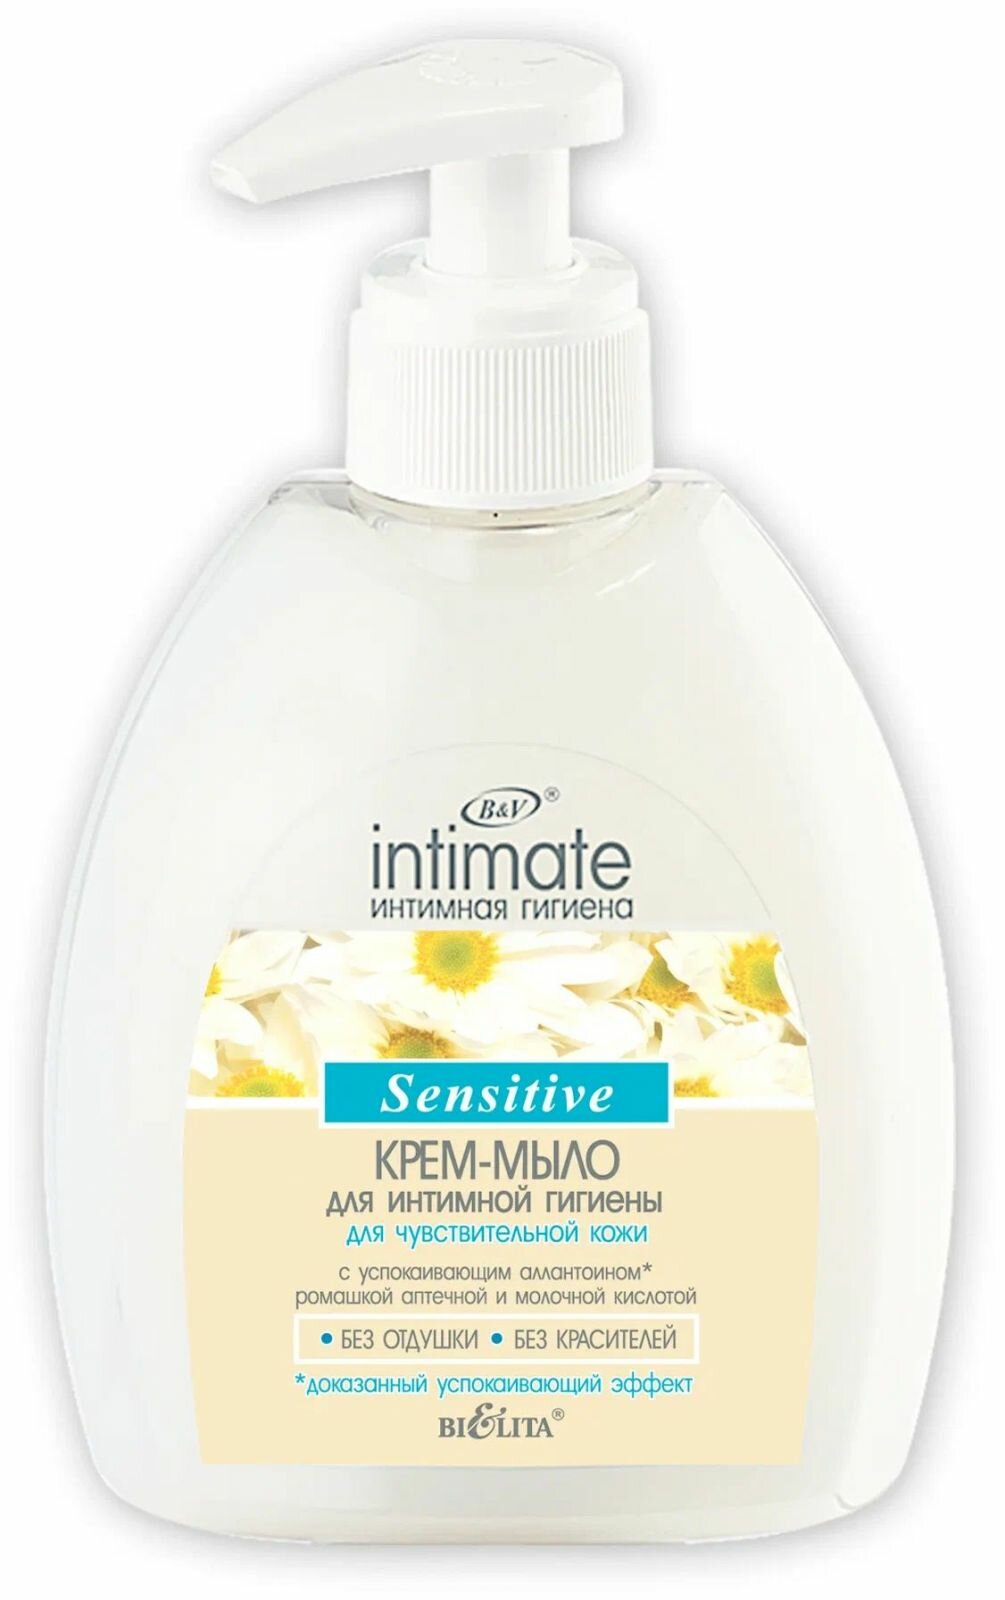 Крем-мыло для интимной гигиены Белита-Витекс "Intimate", Sensitive, для чувствительной кожи, 300 мл